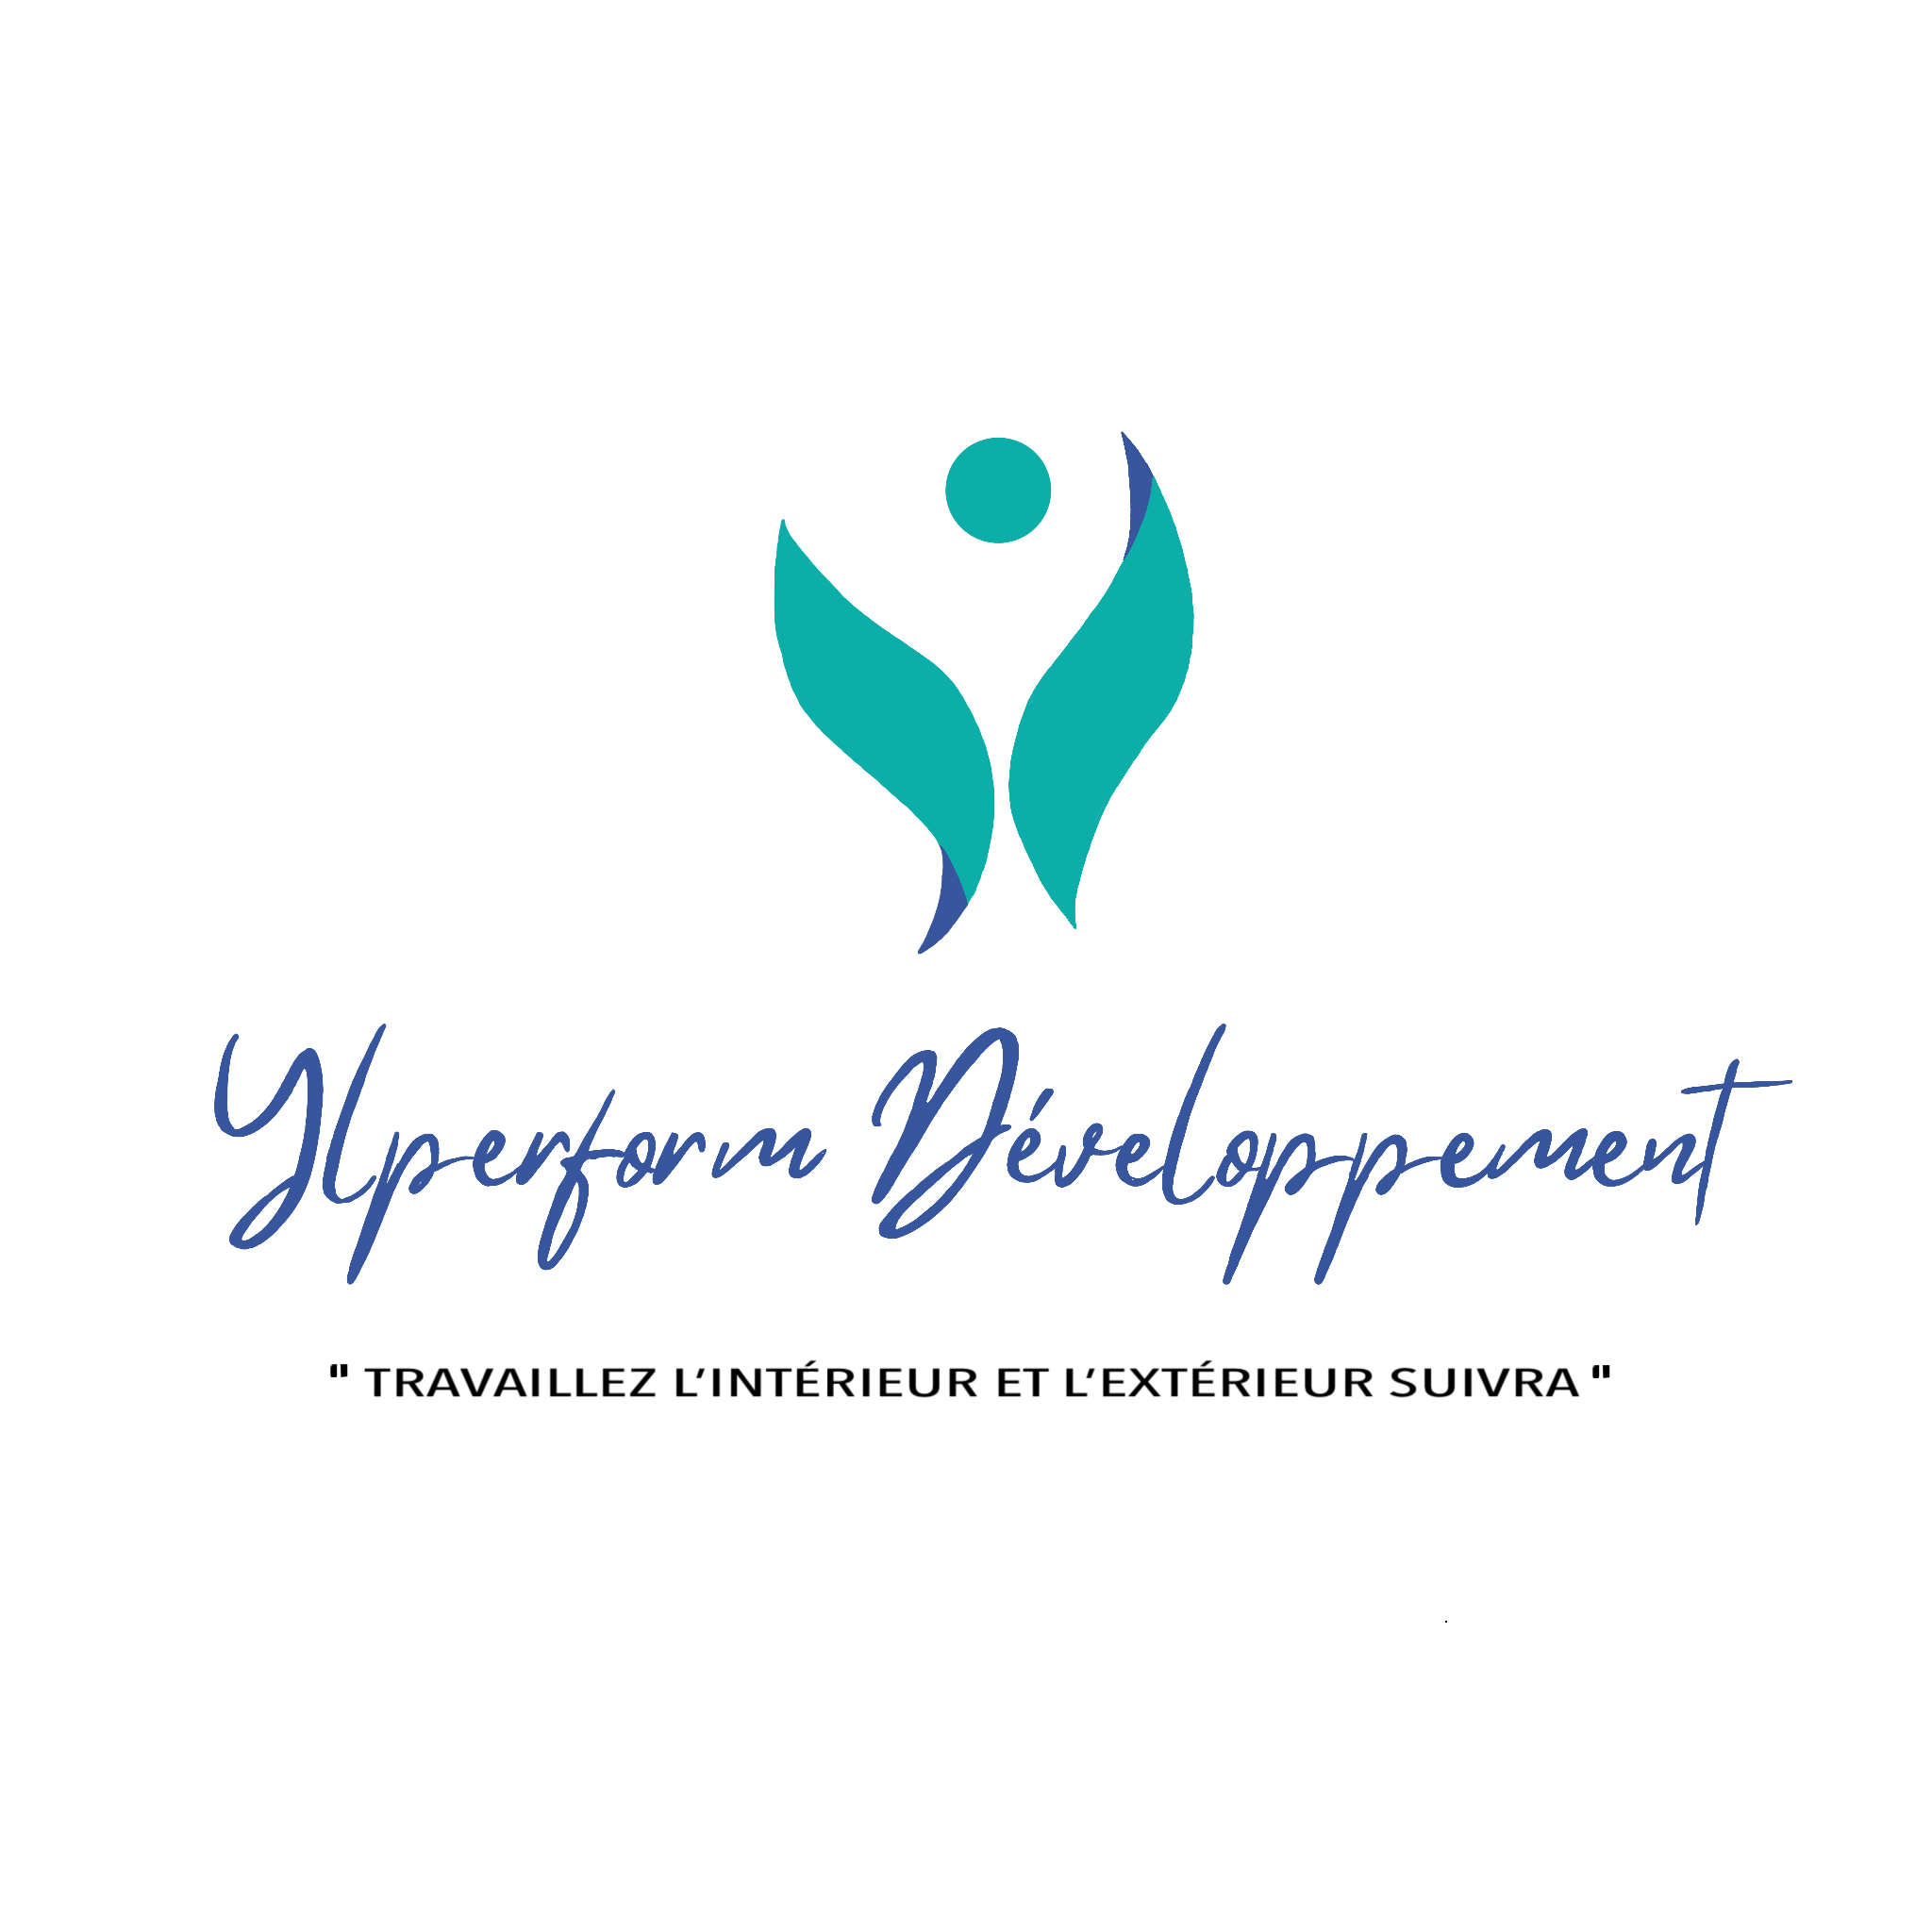 Ylperform Développement - Développement personnel et libération des émotions - Montpellier, Béziers et Narbonne